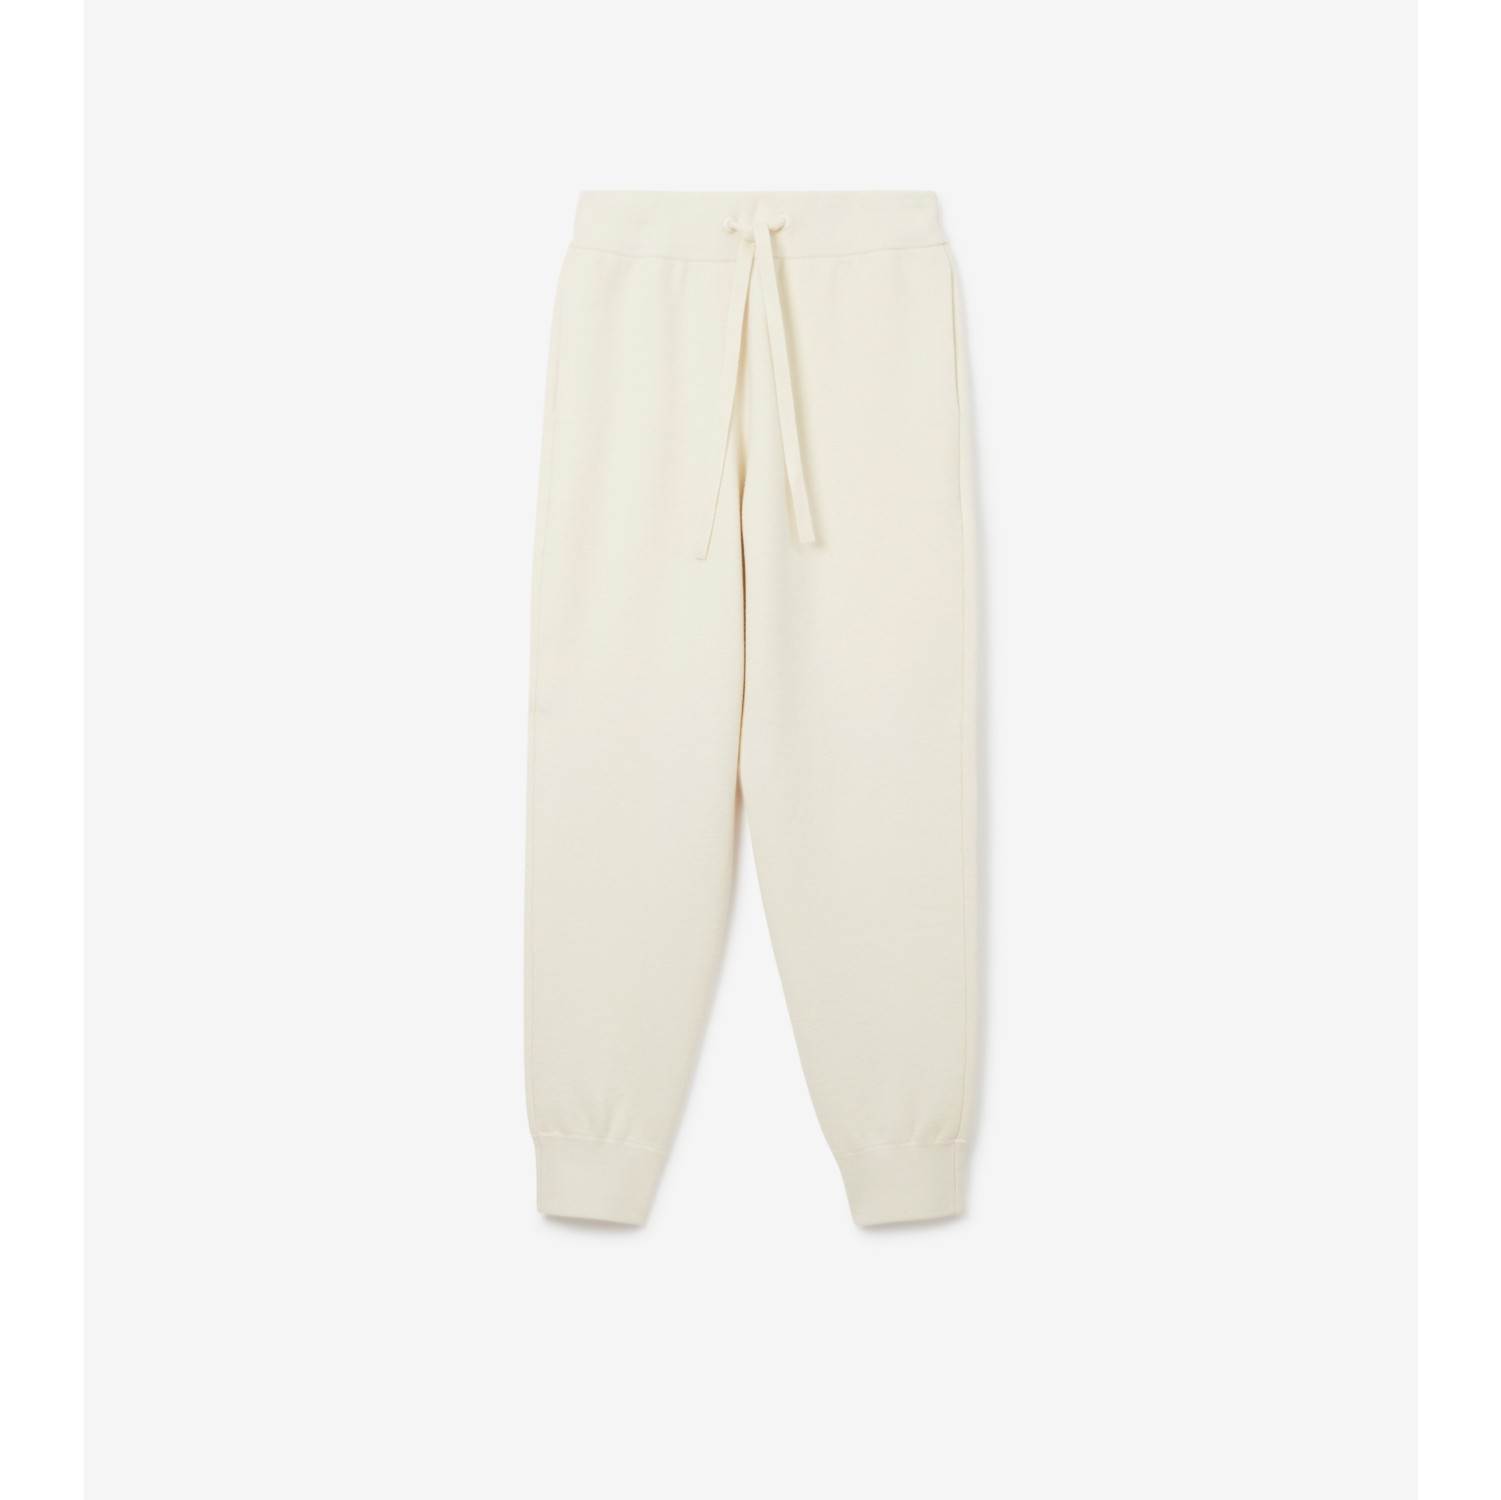 Pantalon de jogging en cachemire mélangé (Blanc naturel) - Femme, Coton,  Nylon, Pur cachemire